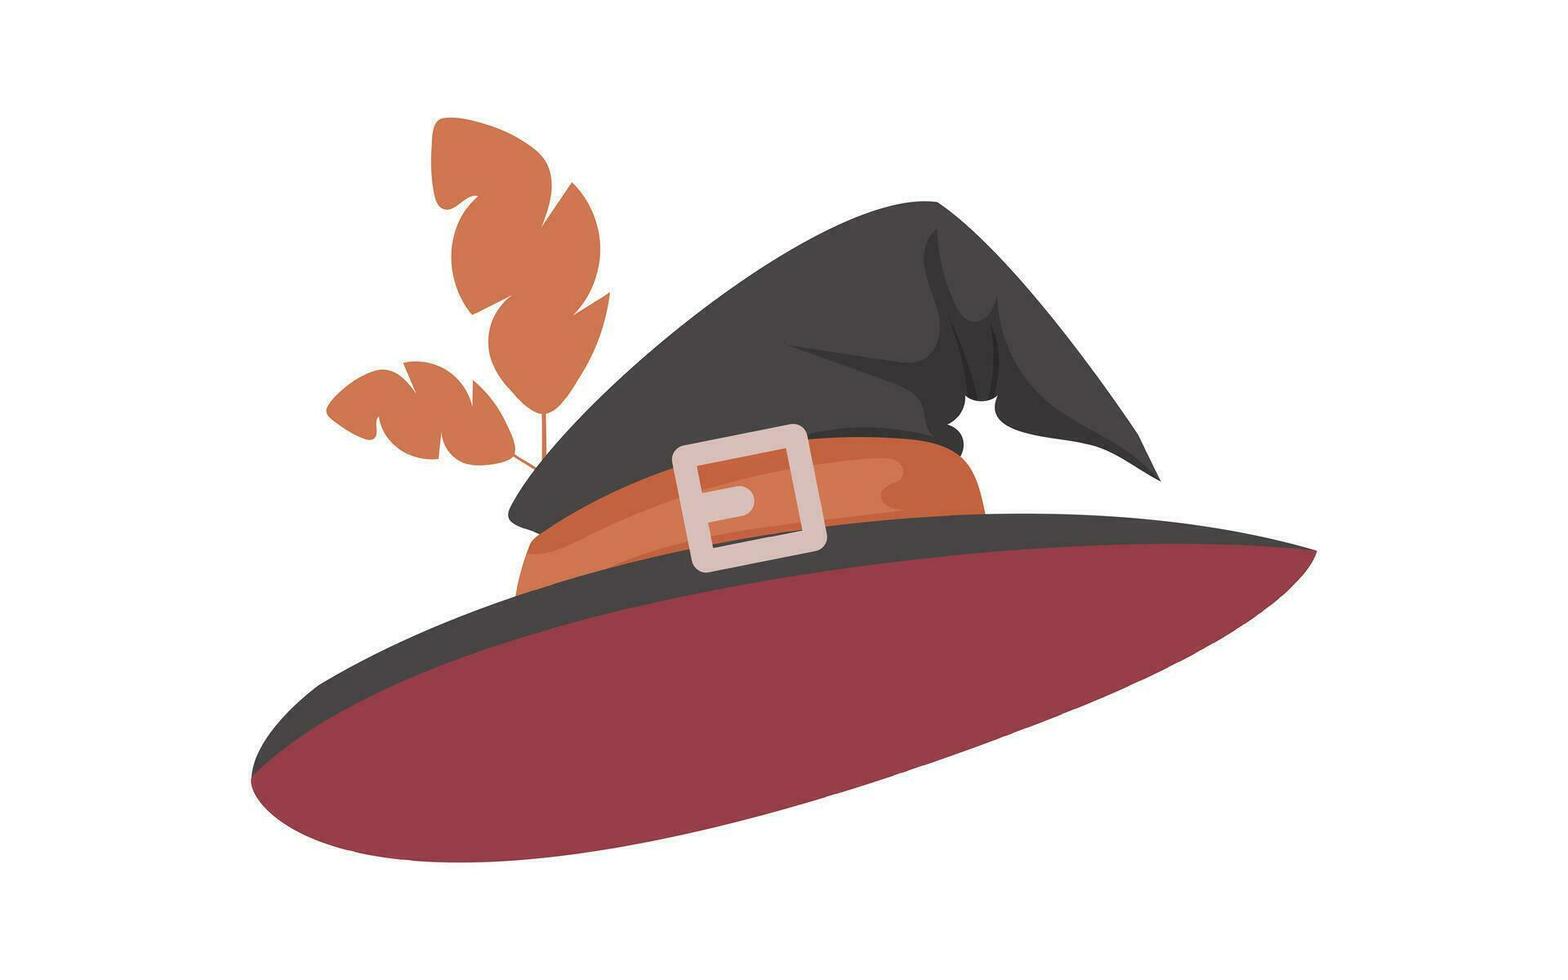 ein Hexe Hut ist ein hoch Hut Das Hexen stellen auf ihr Köpfe. es hat ein Scharf Form. ein Halloween Hut Das ähnelt ein Baseball Deckel. Karikatur Stil, Vektor Illustration